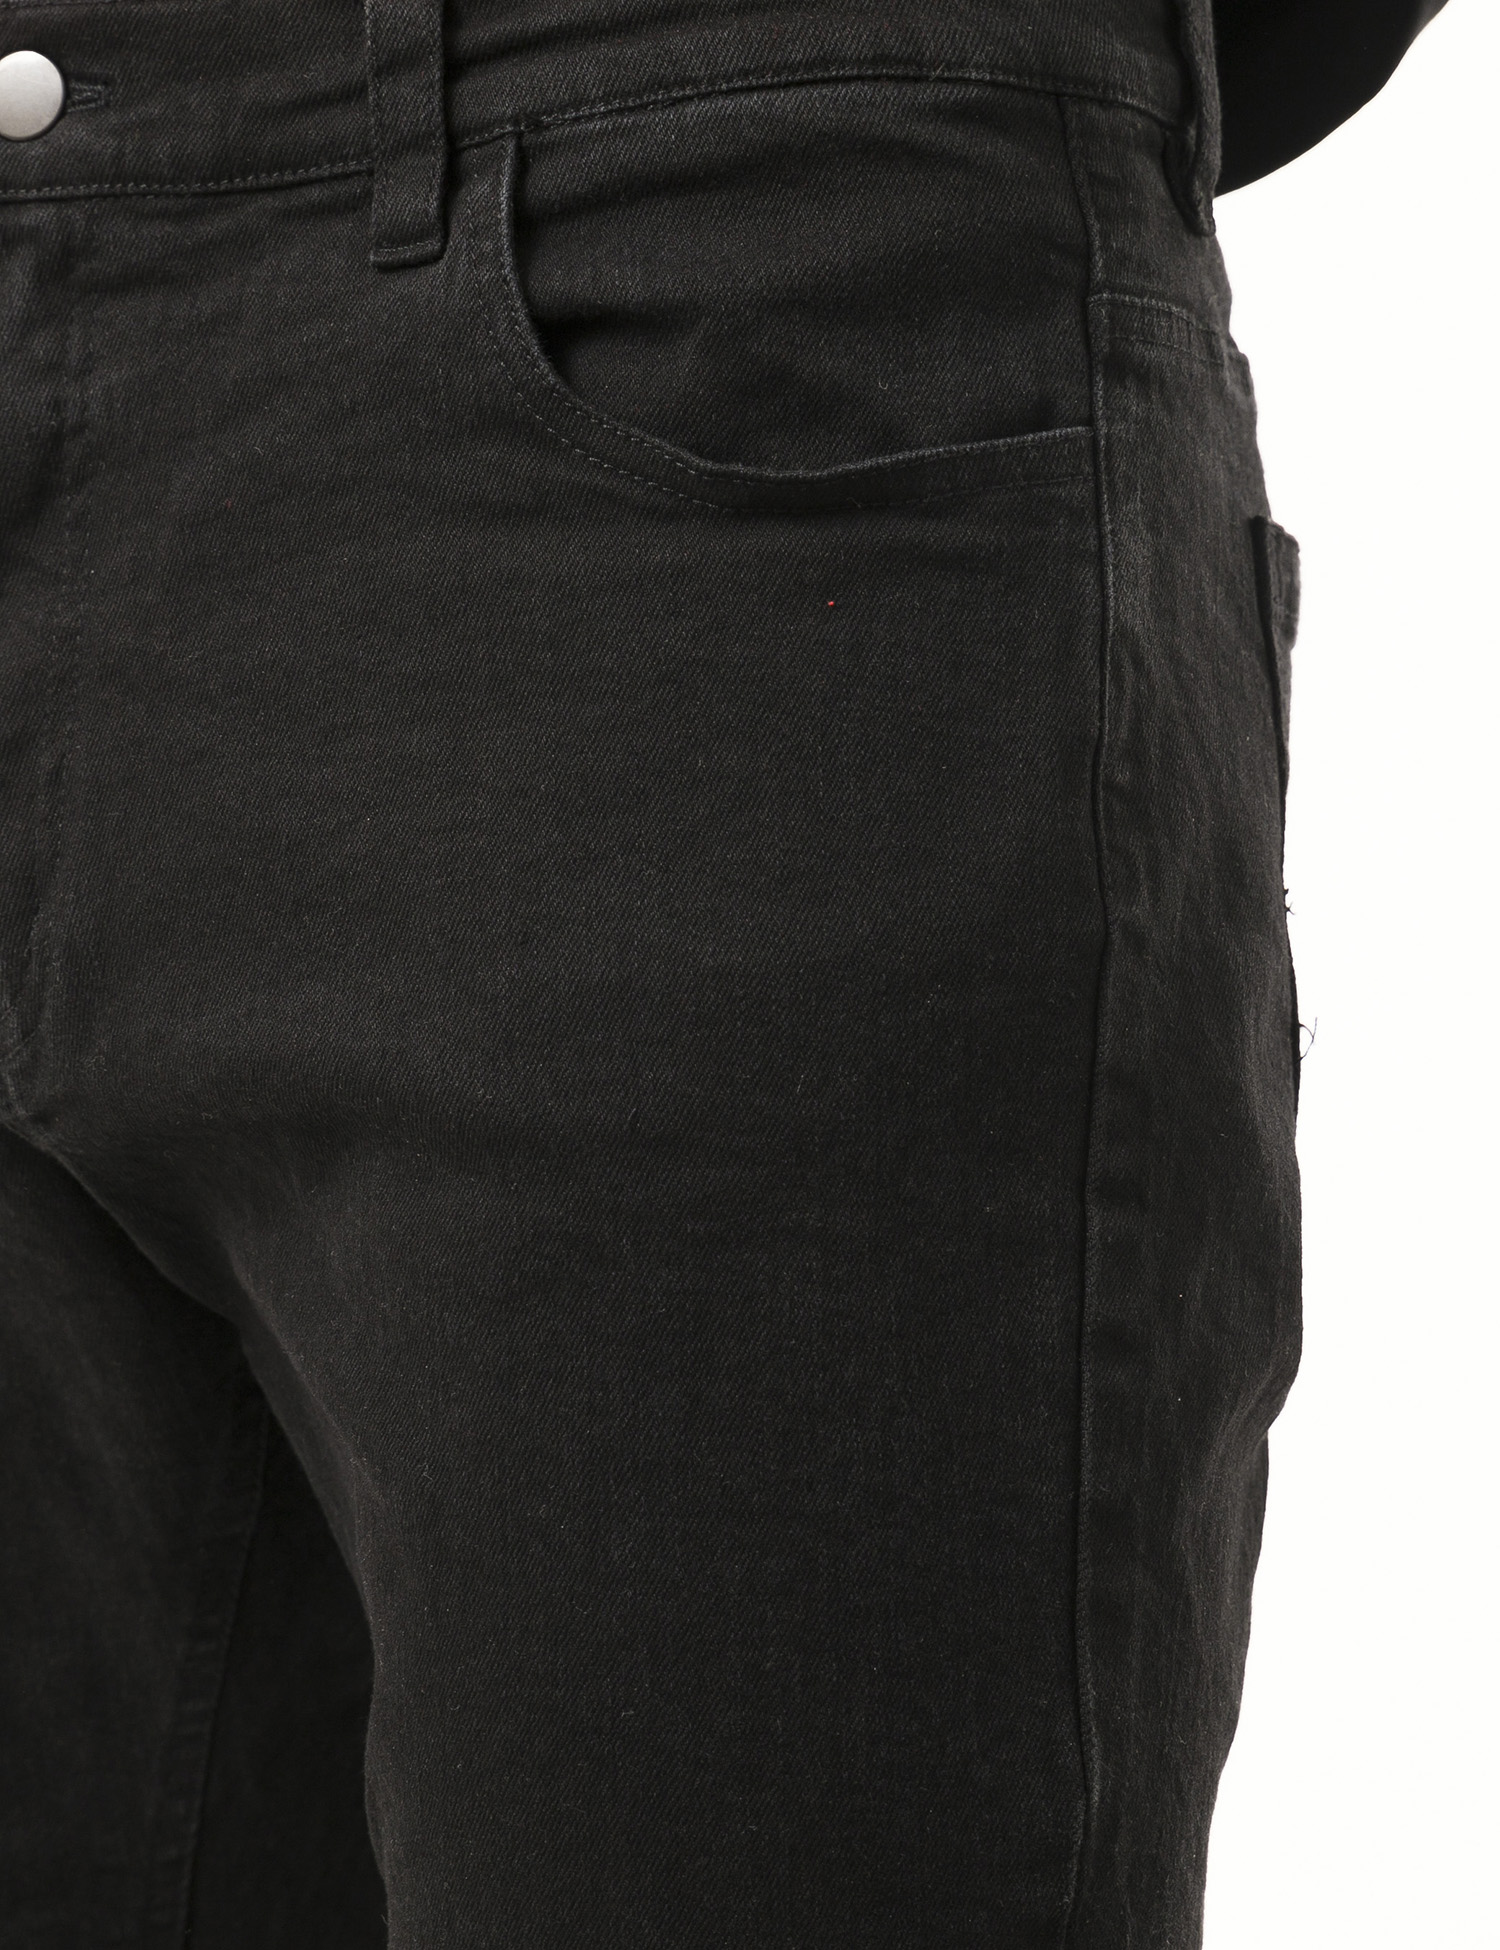 Картинка Чоловічі чорні джинсові шорти